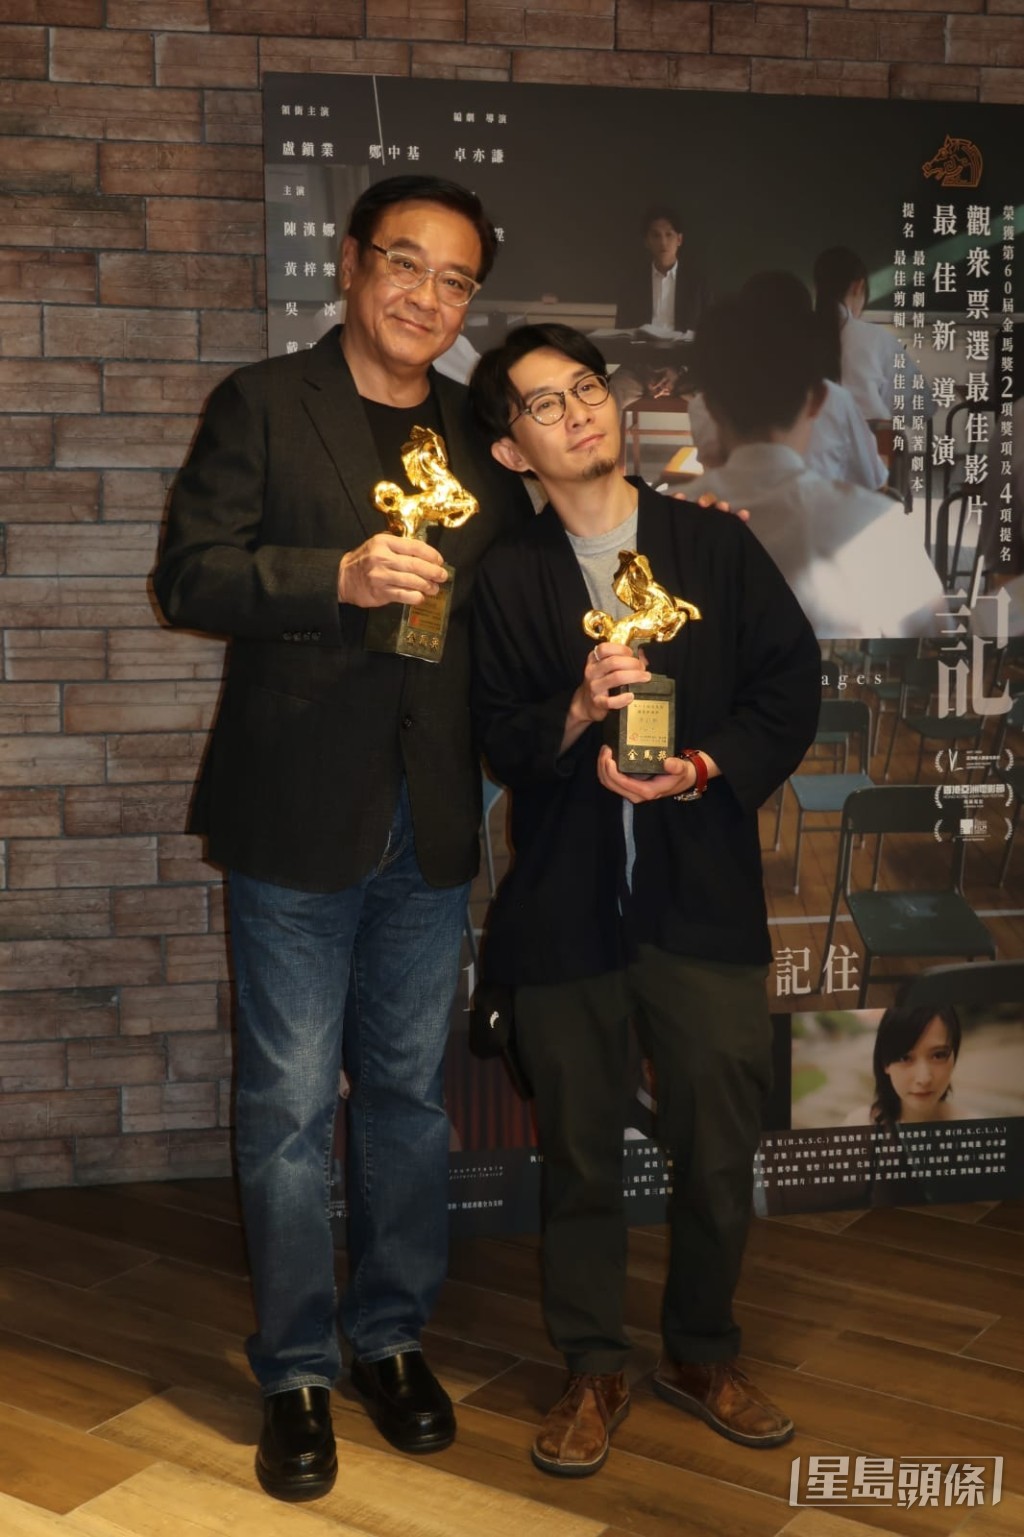 監製爾冬陞表示今次是其擔任監製的第三位導演奪新導演獎，因此很有滿足感。